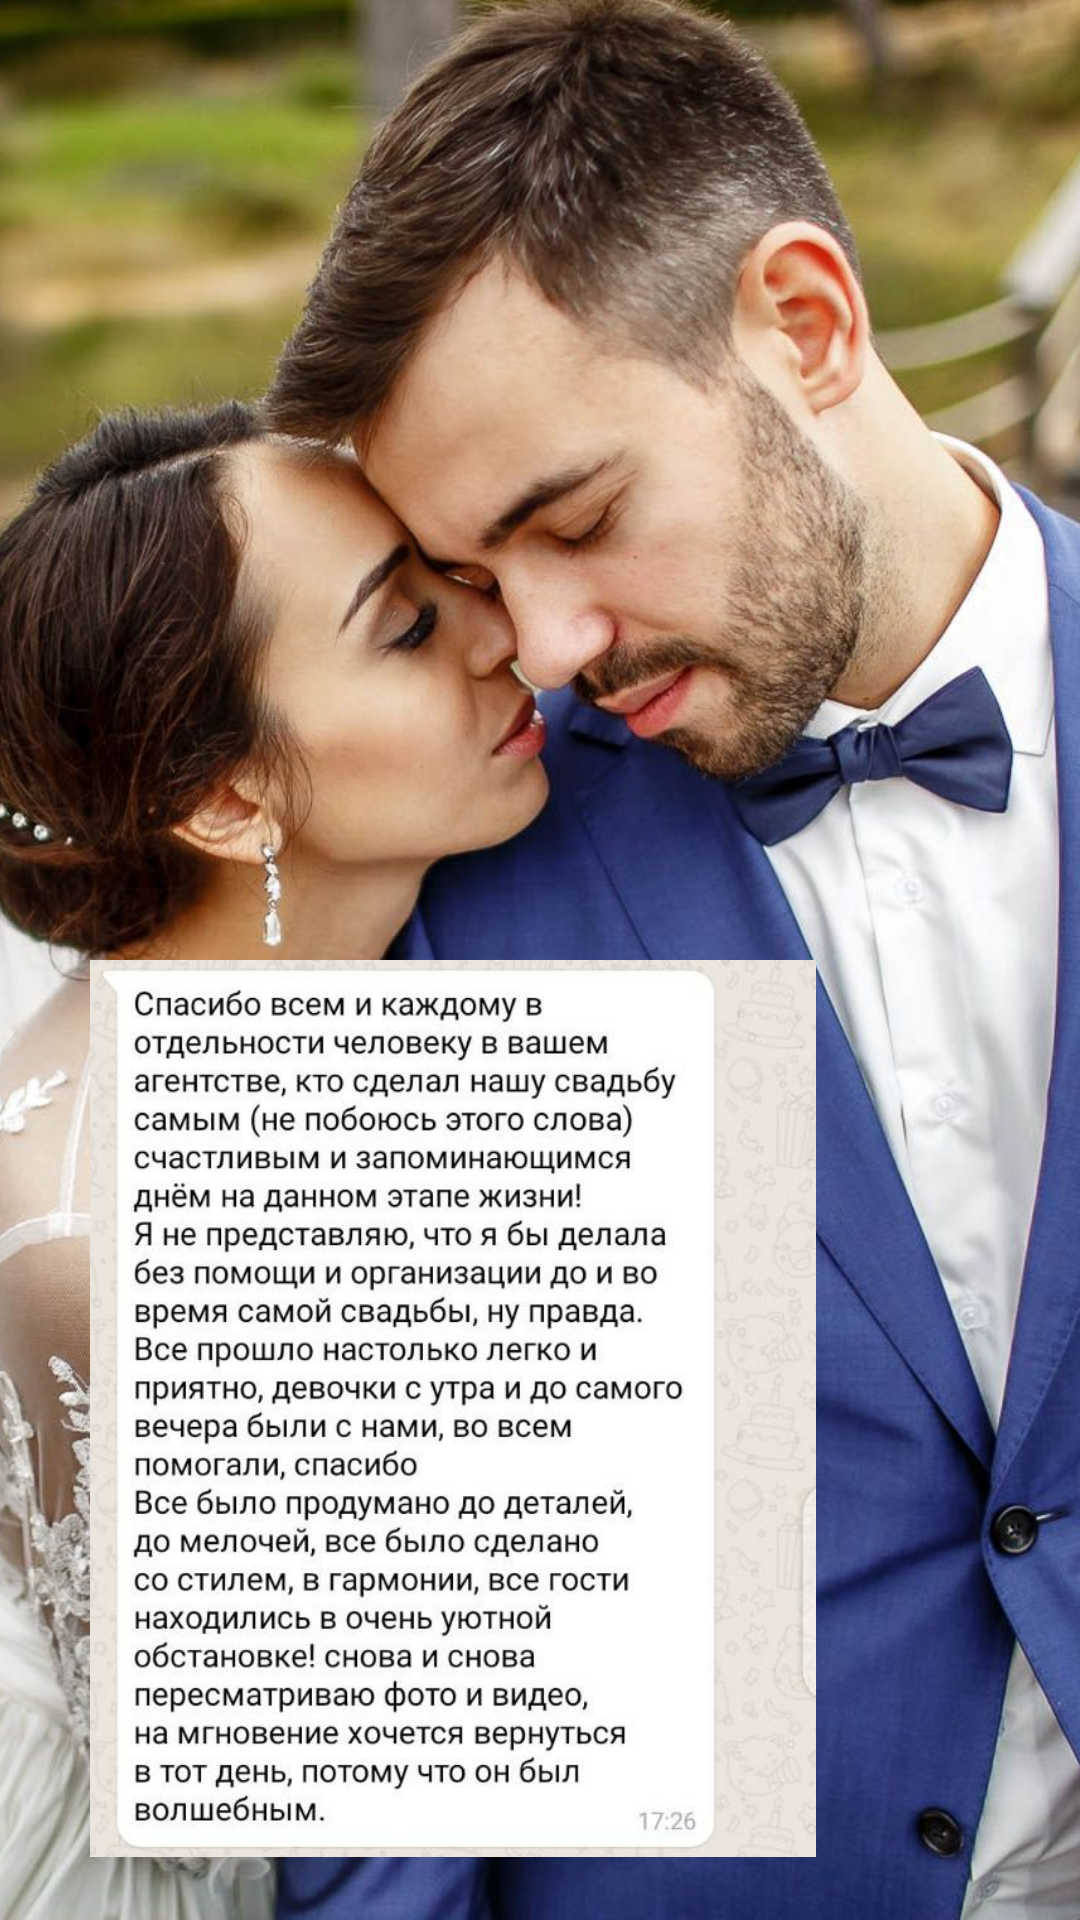 Организация свадьбы в Сочи
от компании Pandaevent